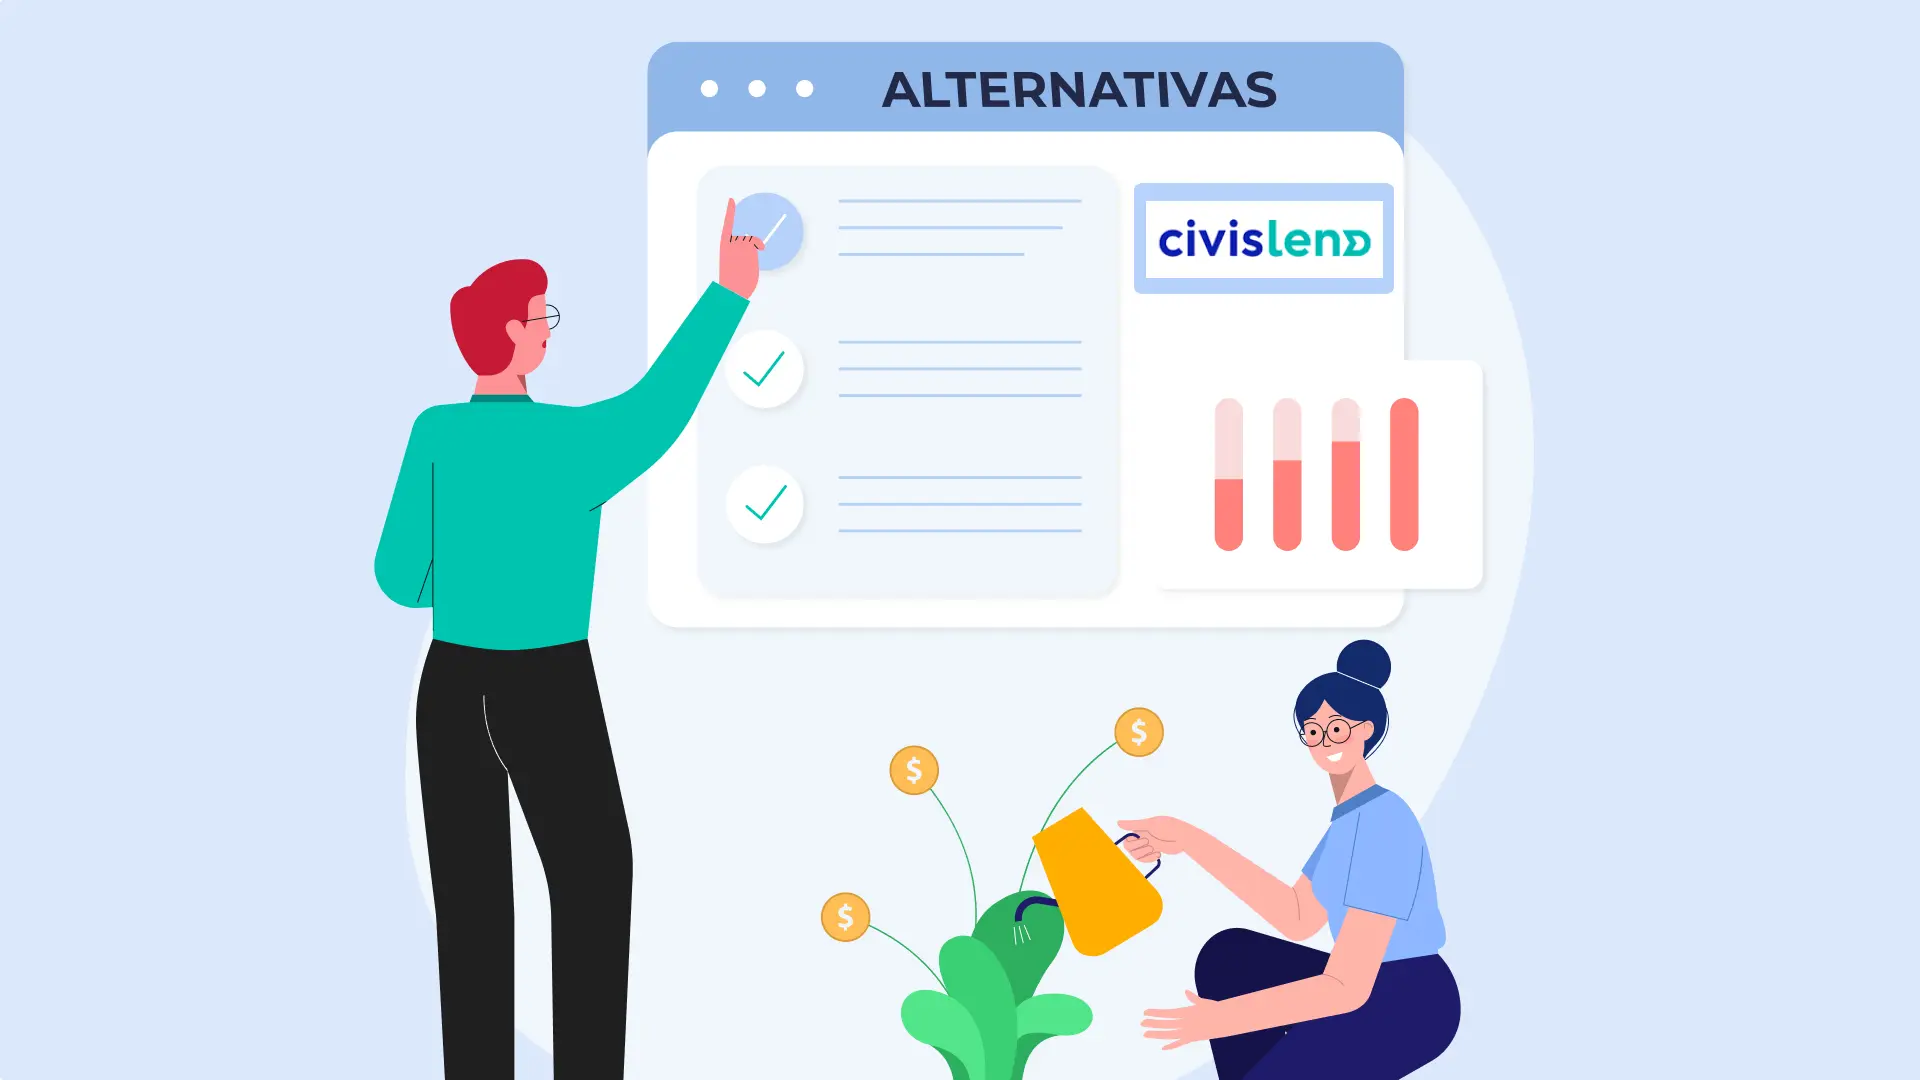 ES/alternativas_civislend.webp